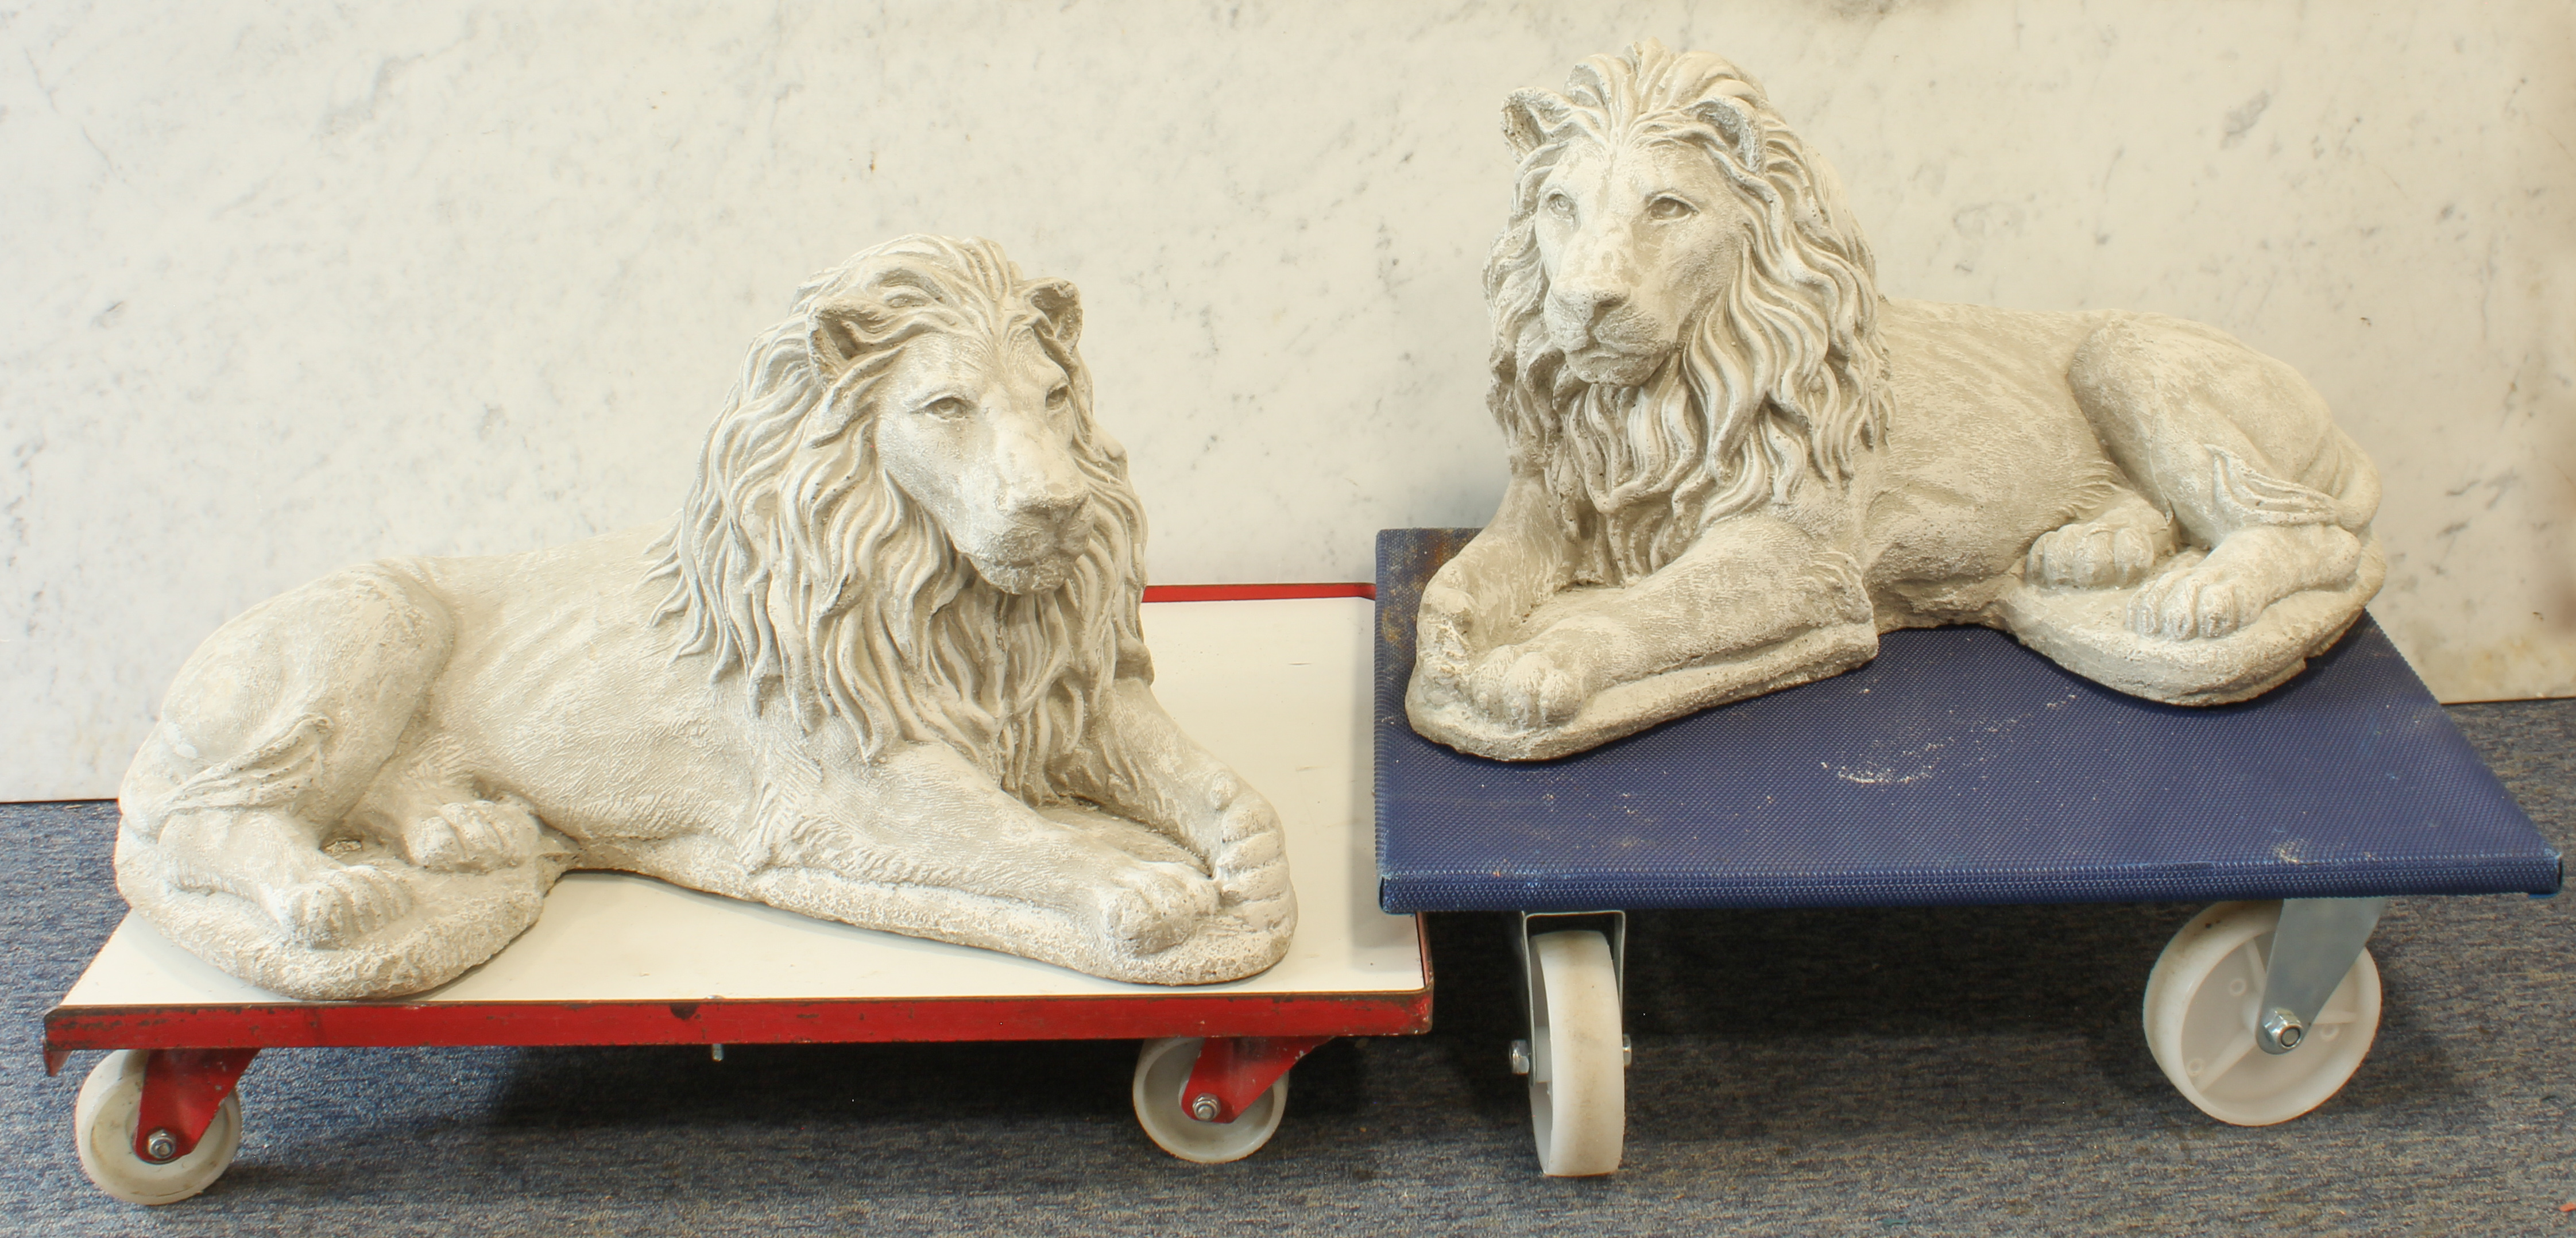 A pair of recumbent garden lion sculptures - cast cement, modern, 64 cm long.